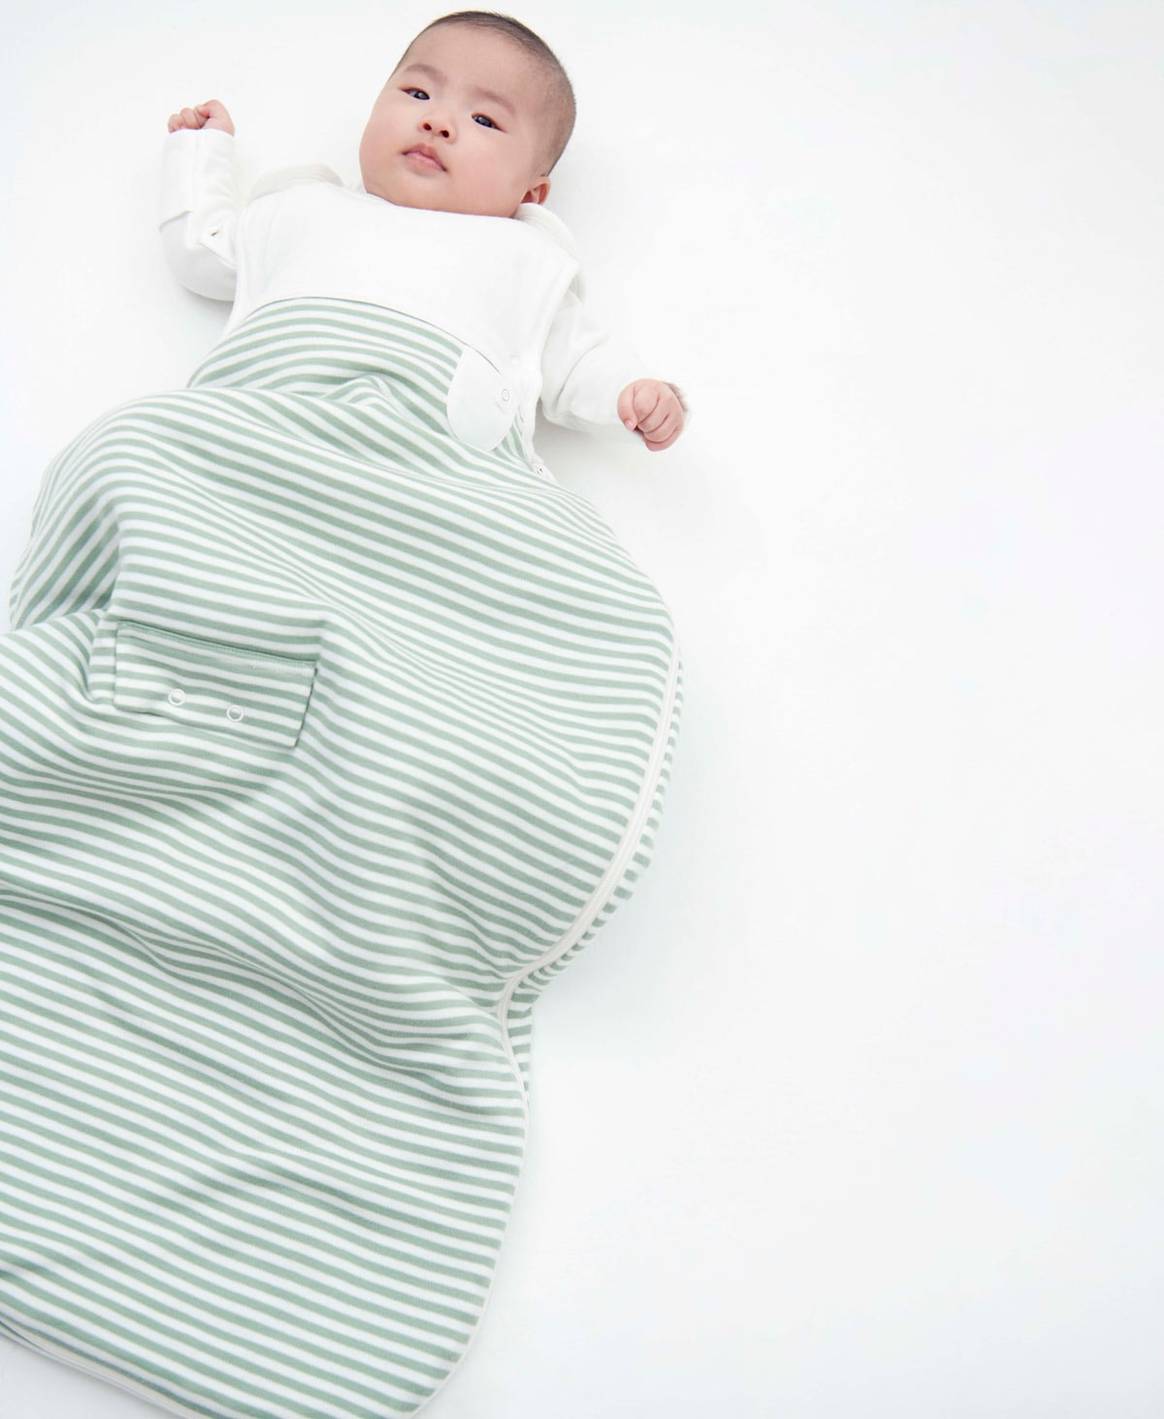 La marca de ropa infantil Mori obtiene una inversión de 4 millones de libras esterlinas